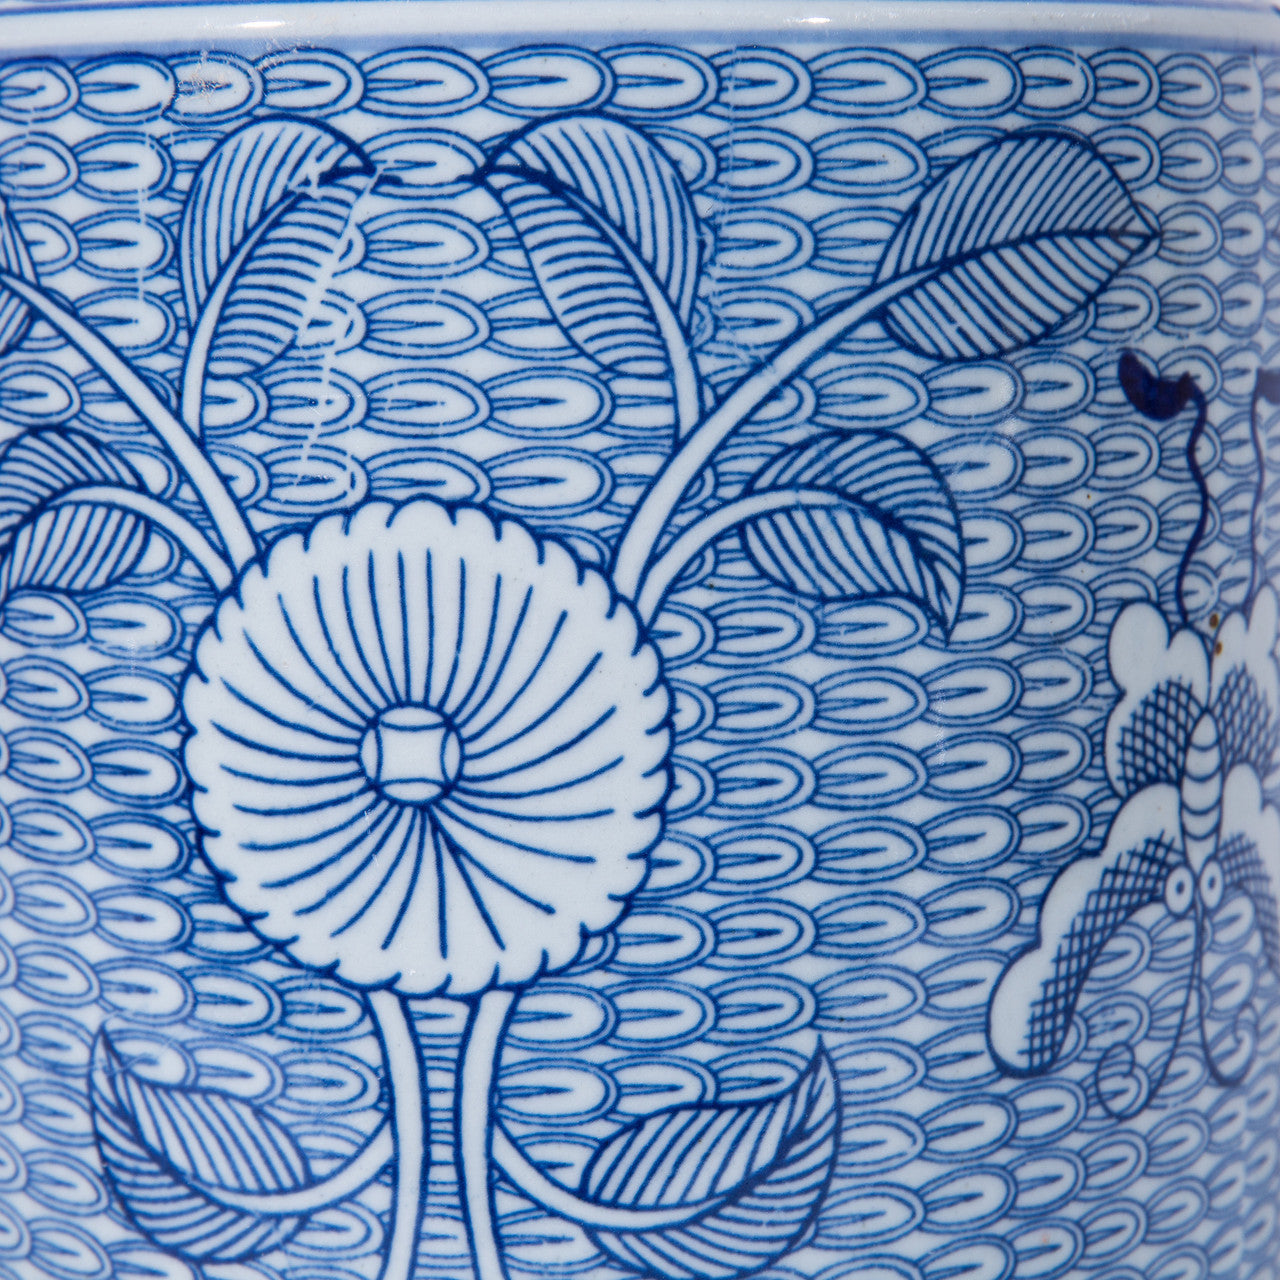 Butterfly Tea Jar